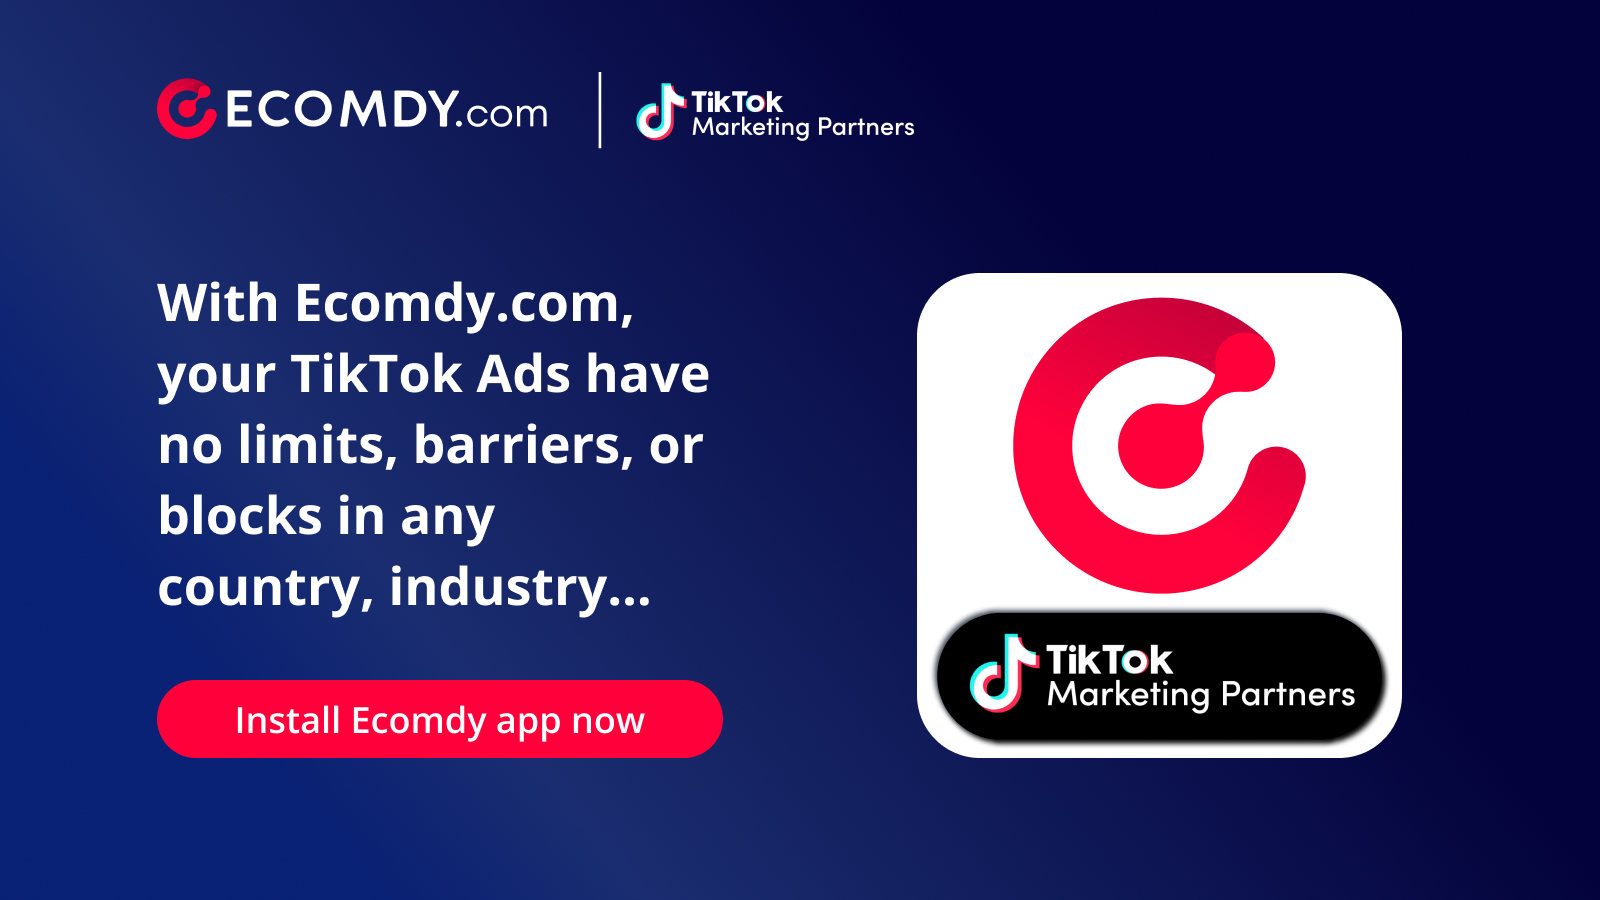 Ecomdy.com - Officiell TikTok Marketing Partner